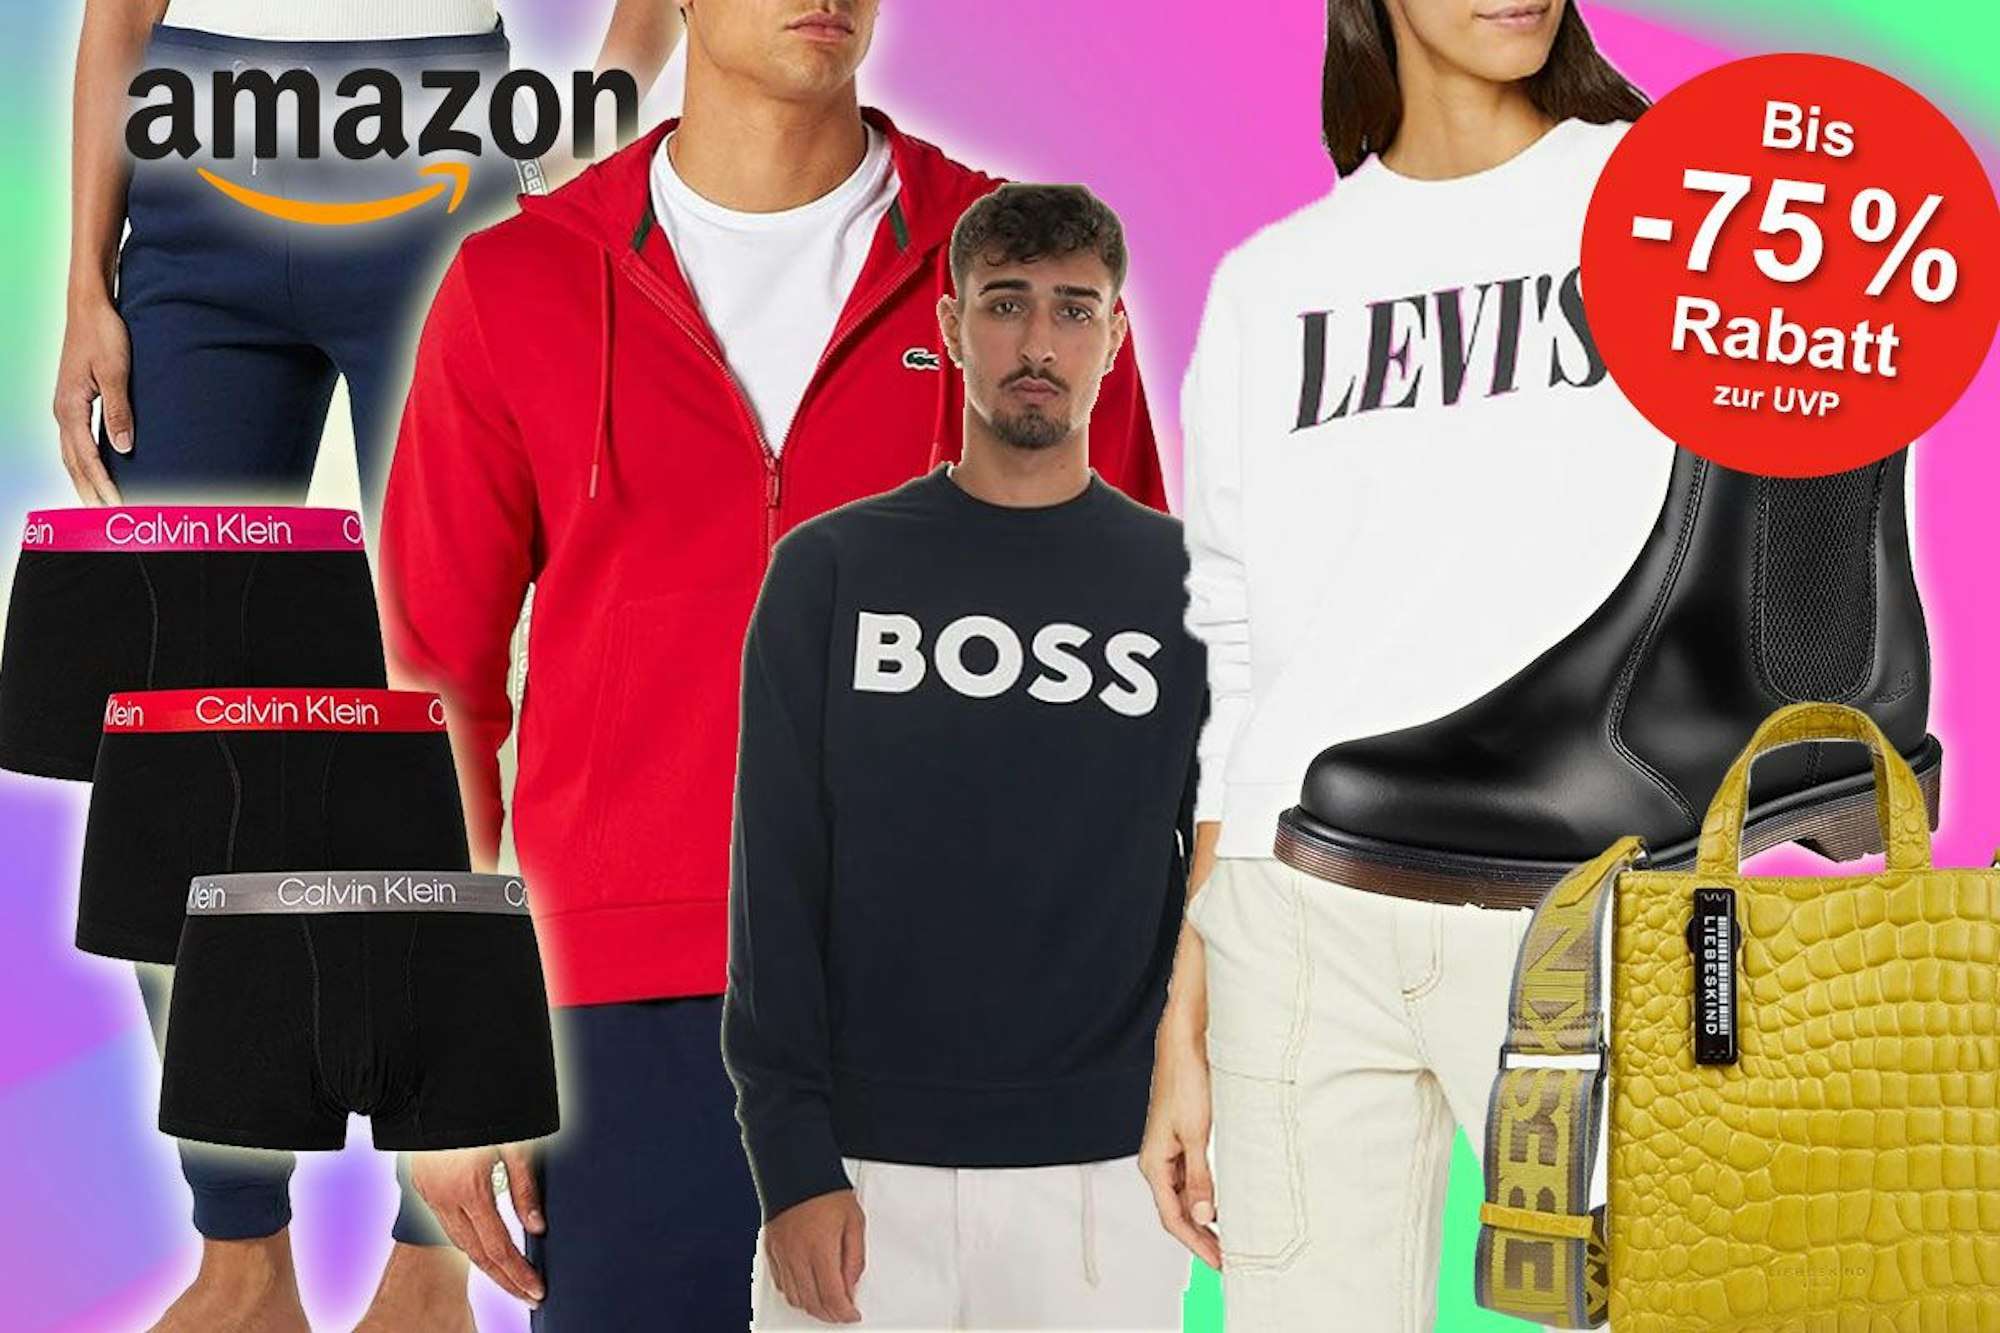 Mega Fashion SALE bei Amazon mit bis zu 75% auf BIG Brands.